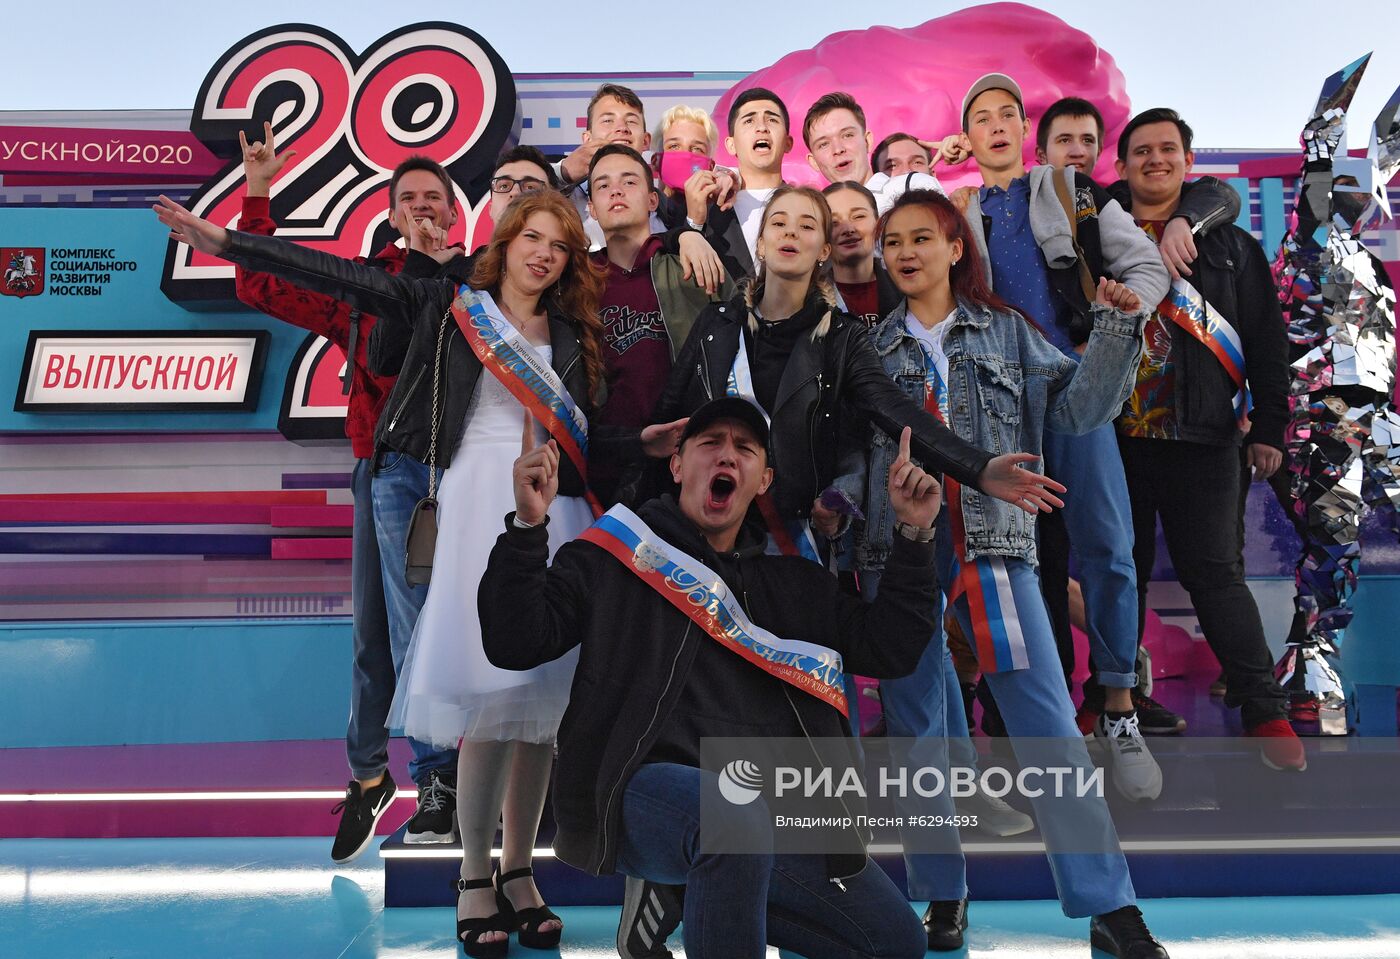 Выпускной - 2020 в парке Горького